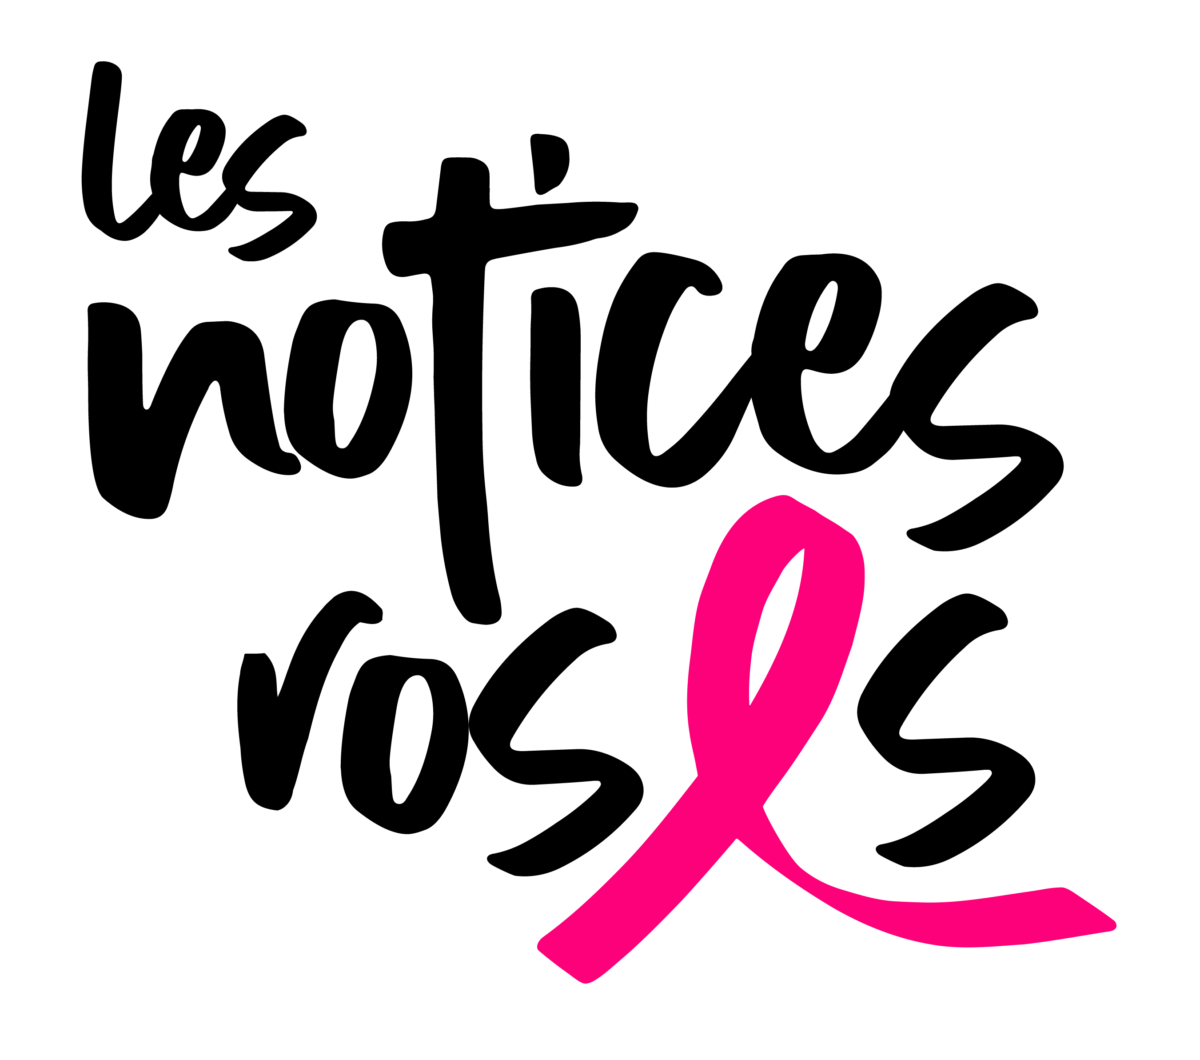 Cancer du sein: Connaitre les notices roses et les faire connaitre